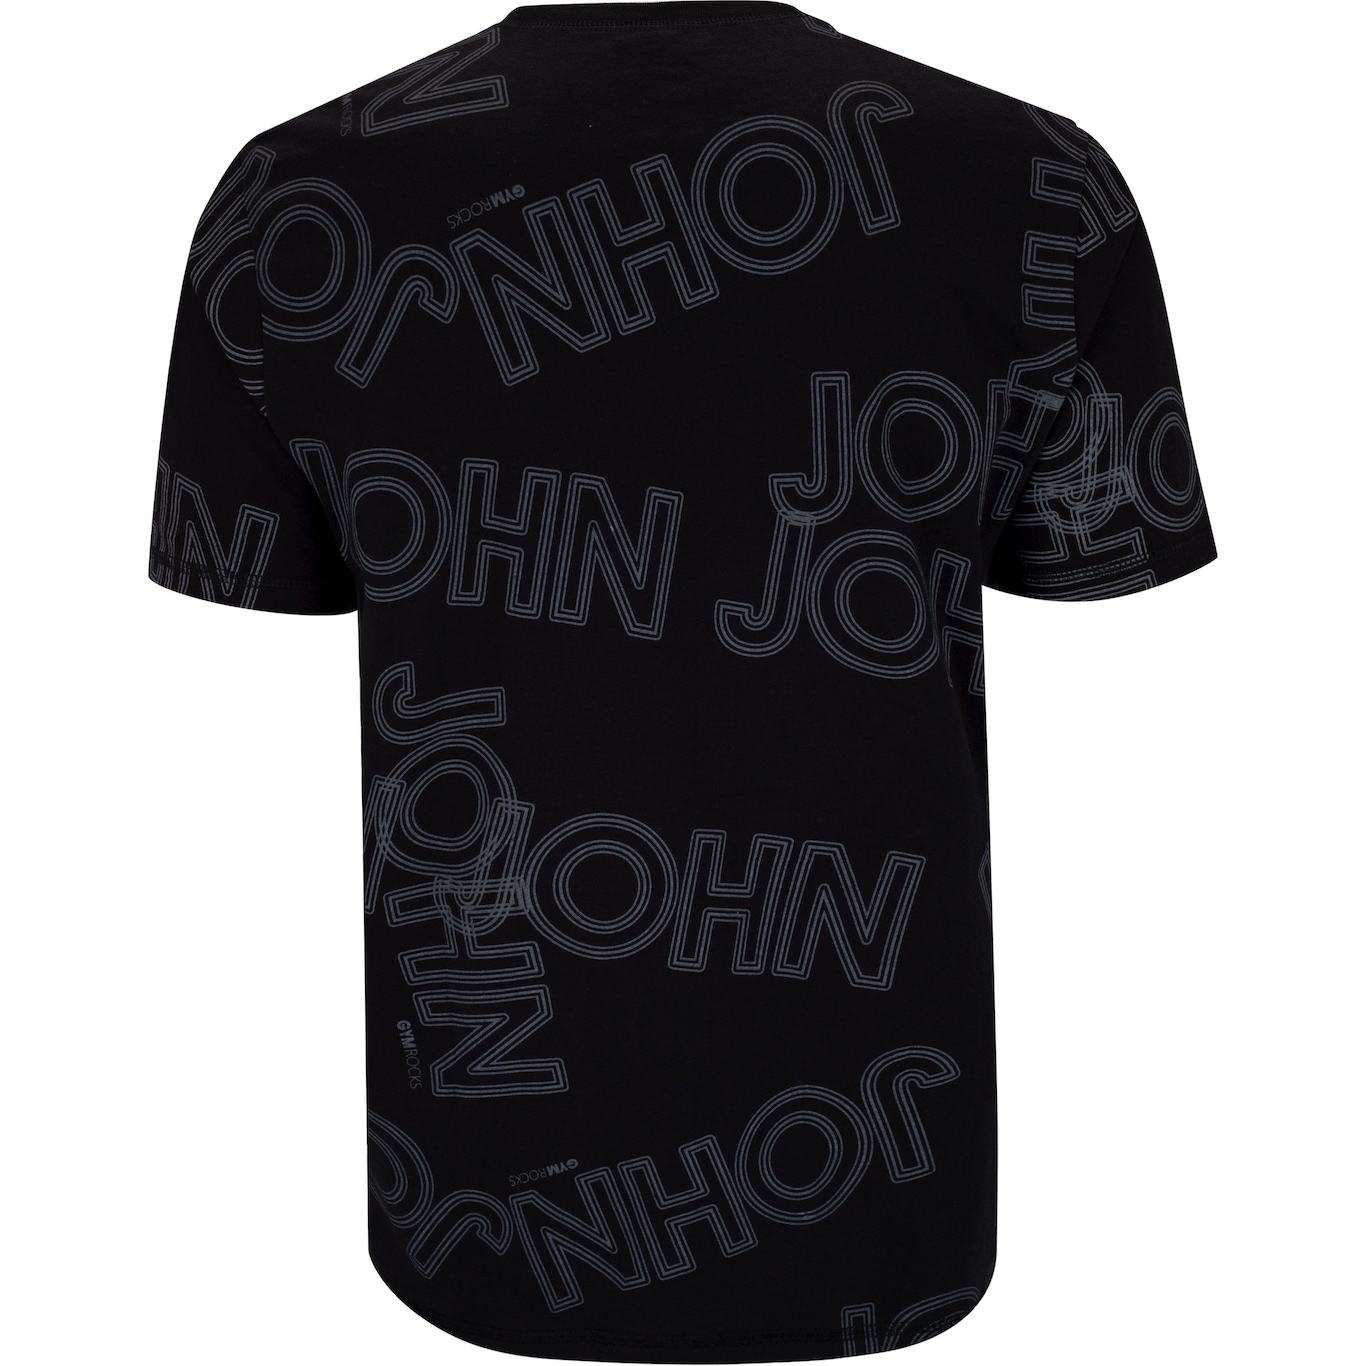 Camiseta John John Gym Rocks Manga Curta Gabeira - Feminina